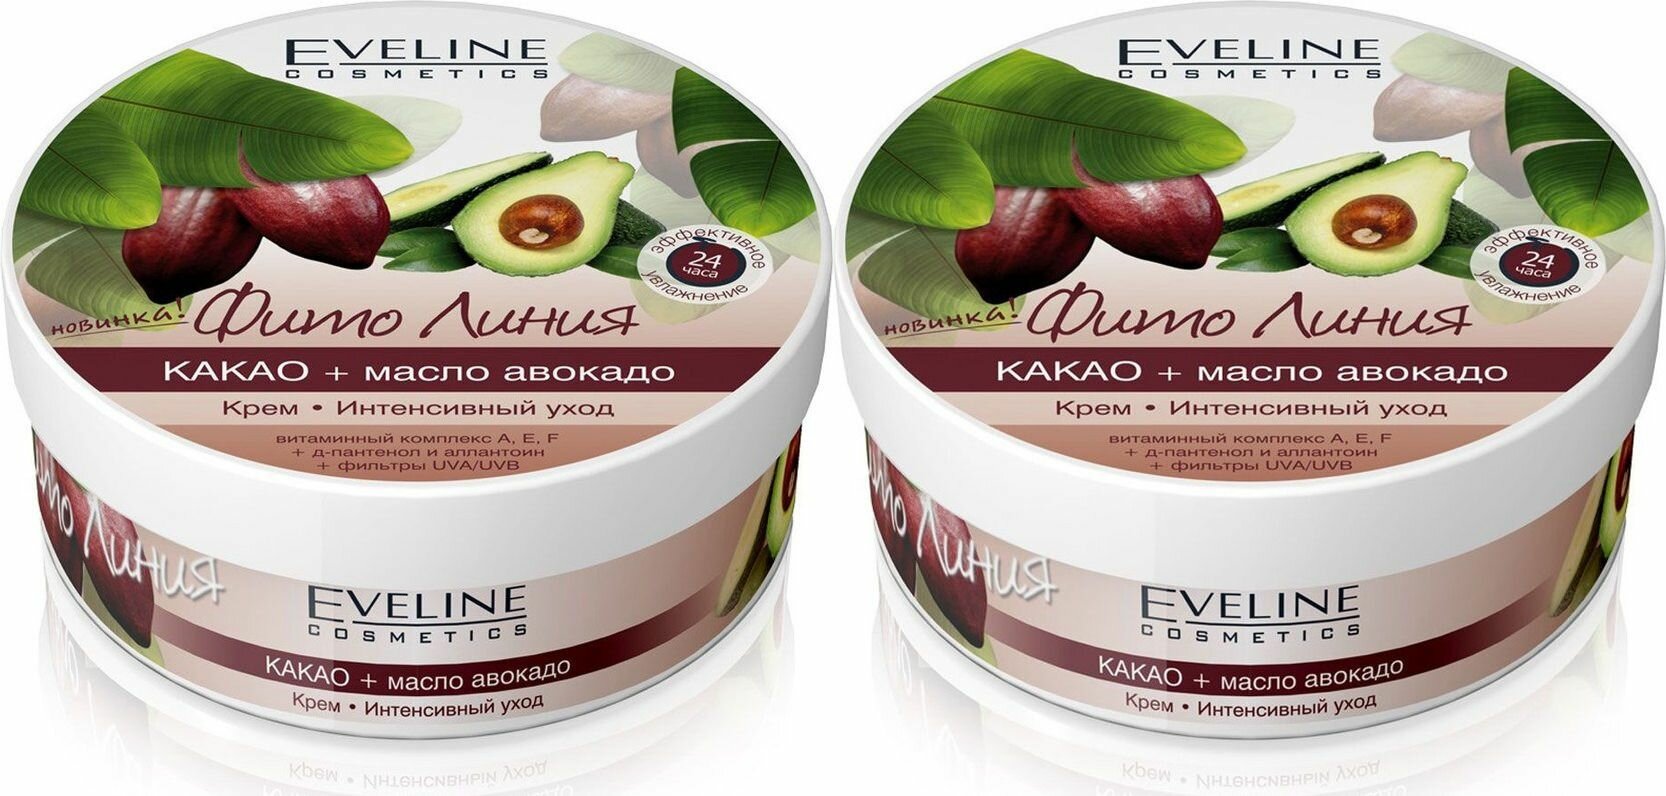 Eveline Cosmetics Крем для тела Фито Линия Интенсивный уход, Какао, Масло авокадо, 210 мл, 2 шт